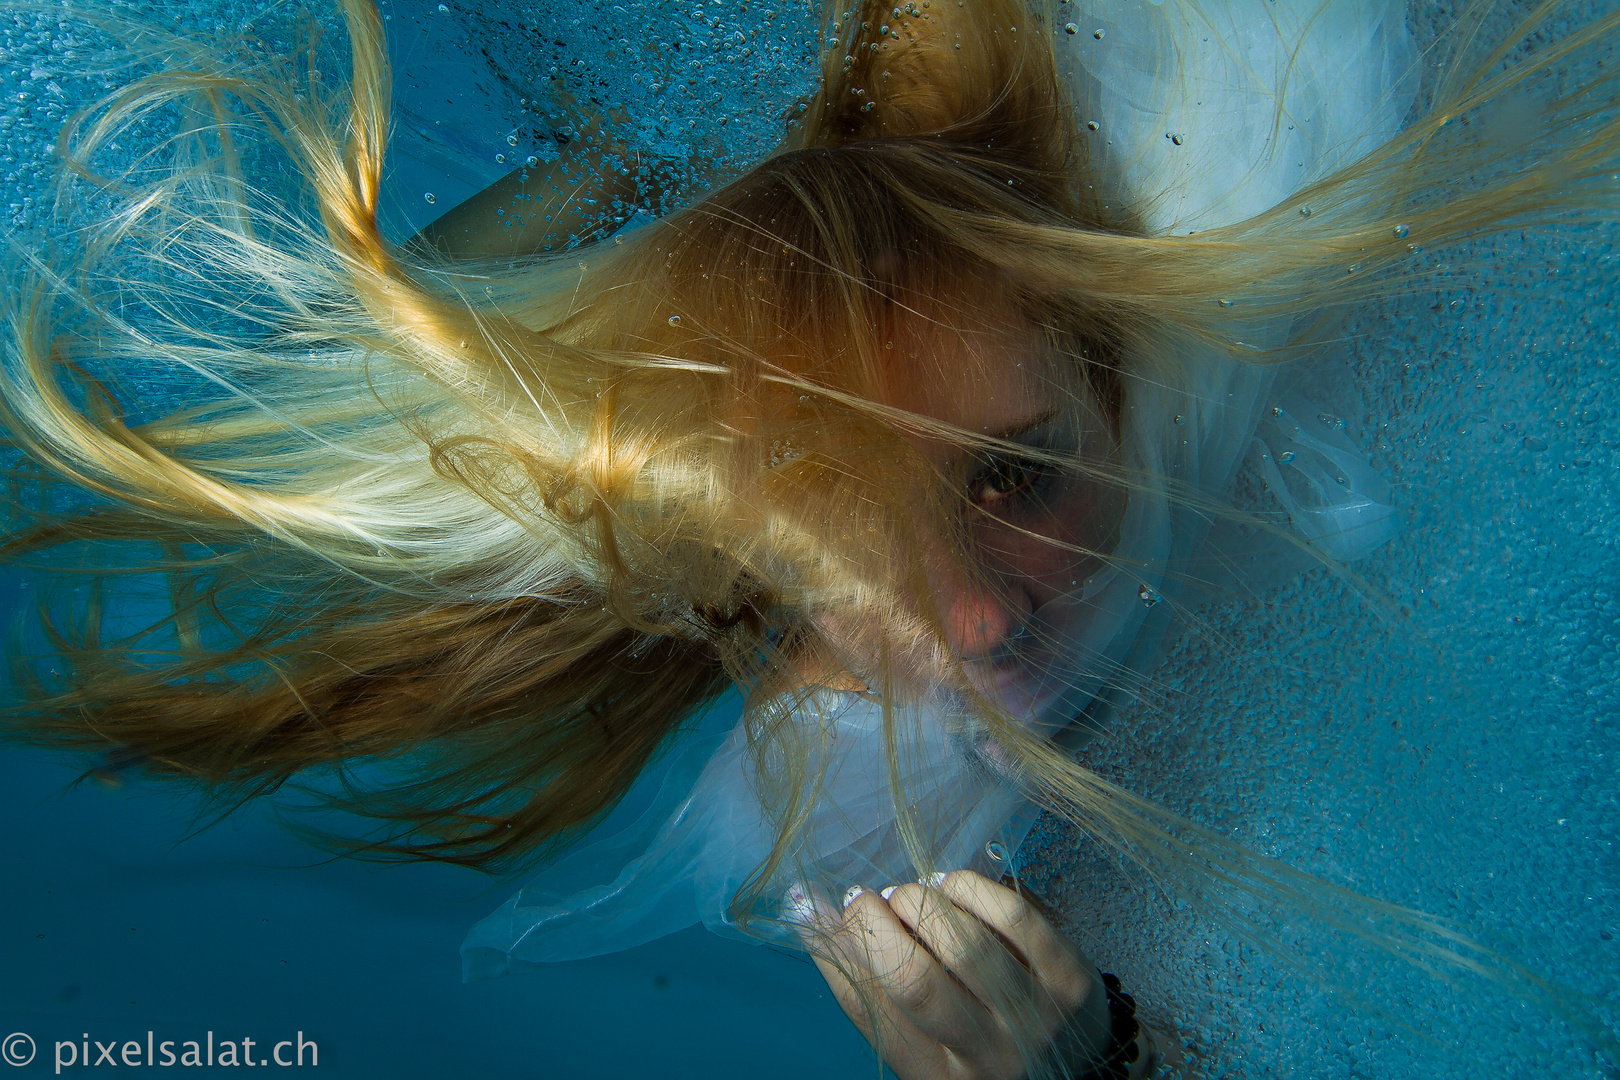 Underwater 1